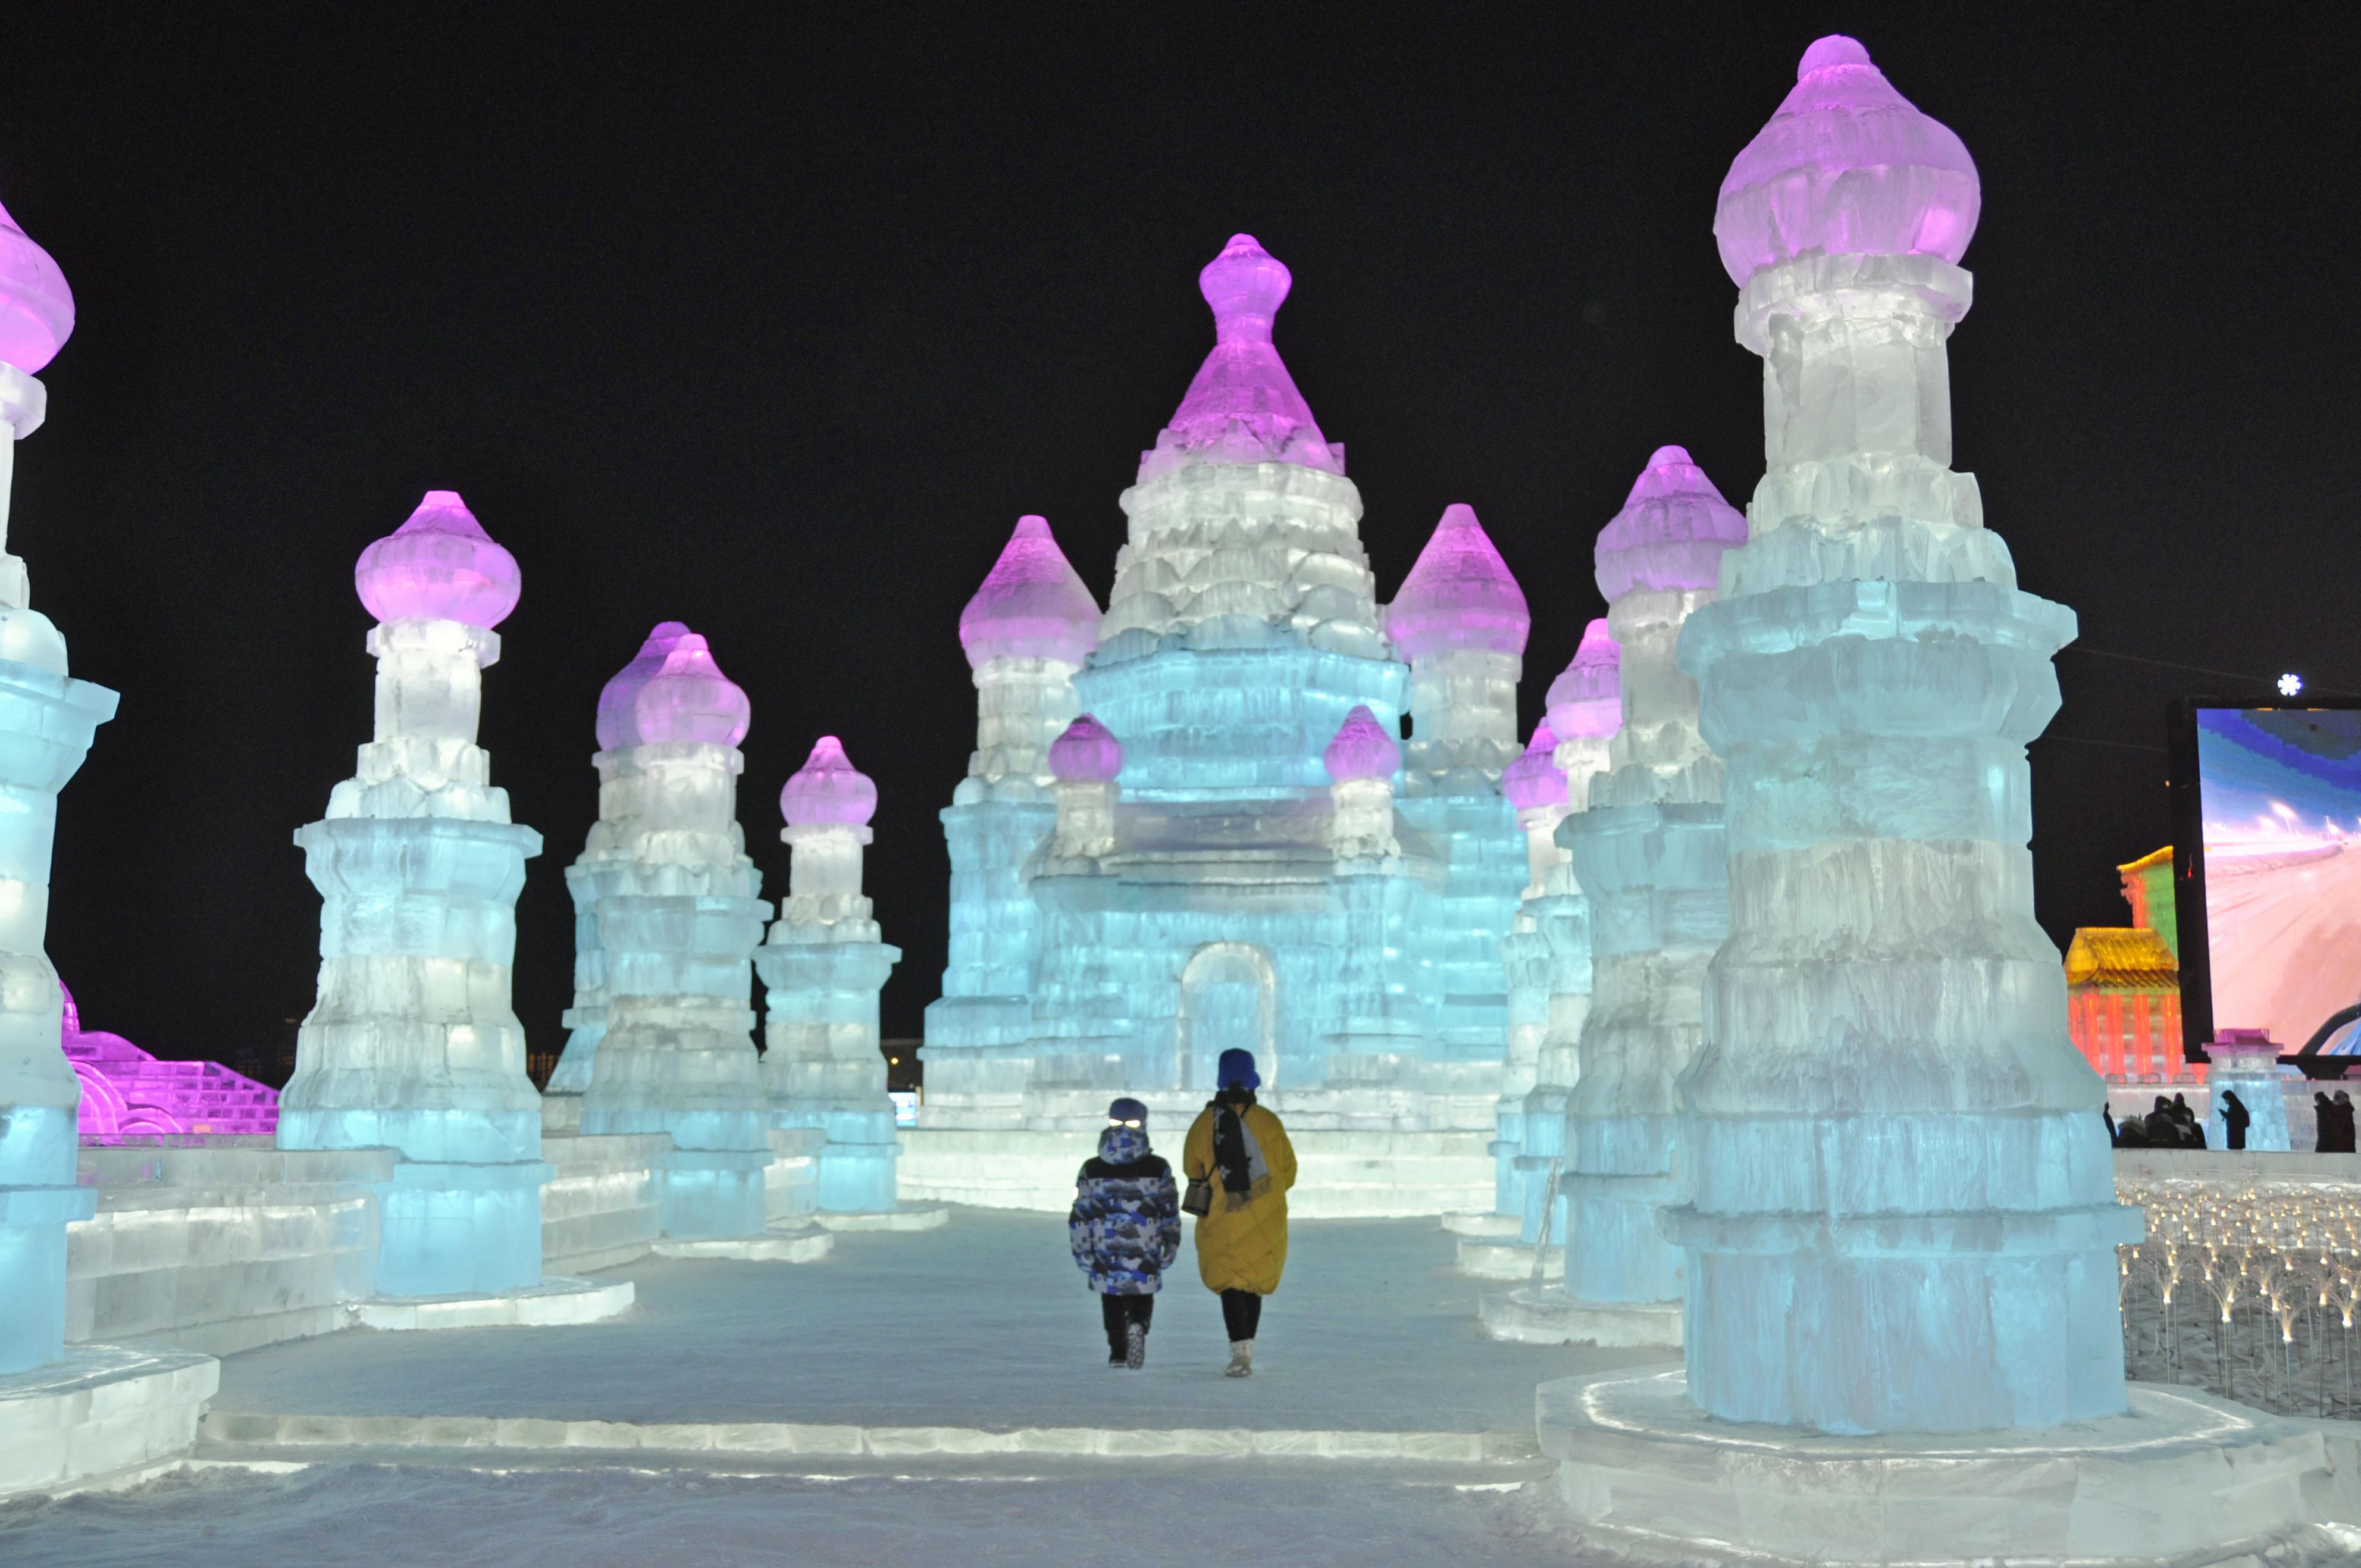 おとぎ話の世界」中国ハルビンで氷雪祭り 極寒の中、巨大造形が魅了 - 産経ニュース